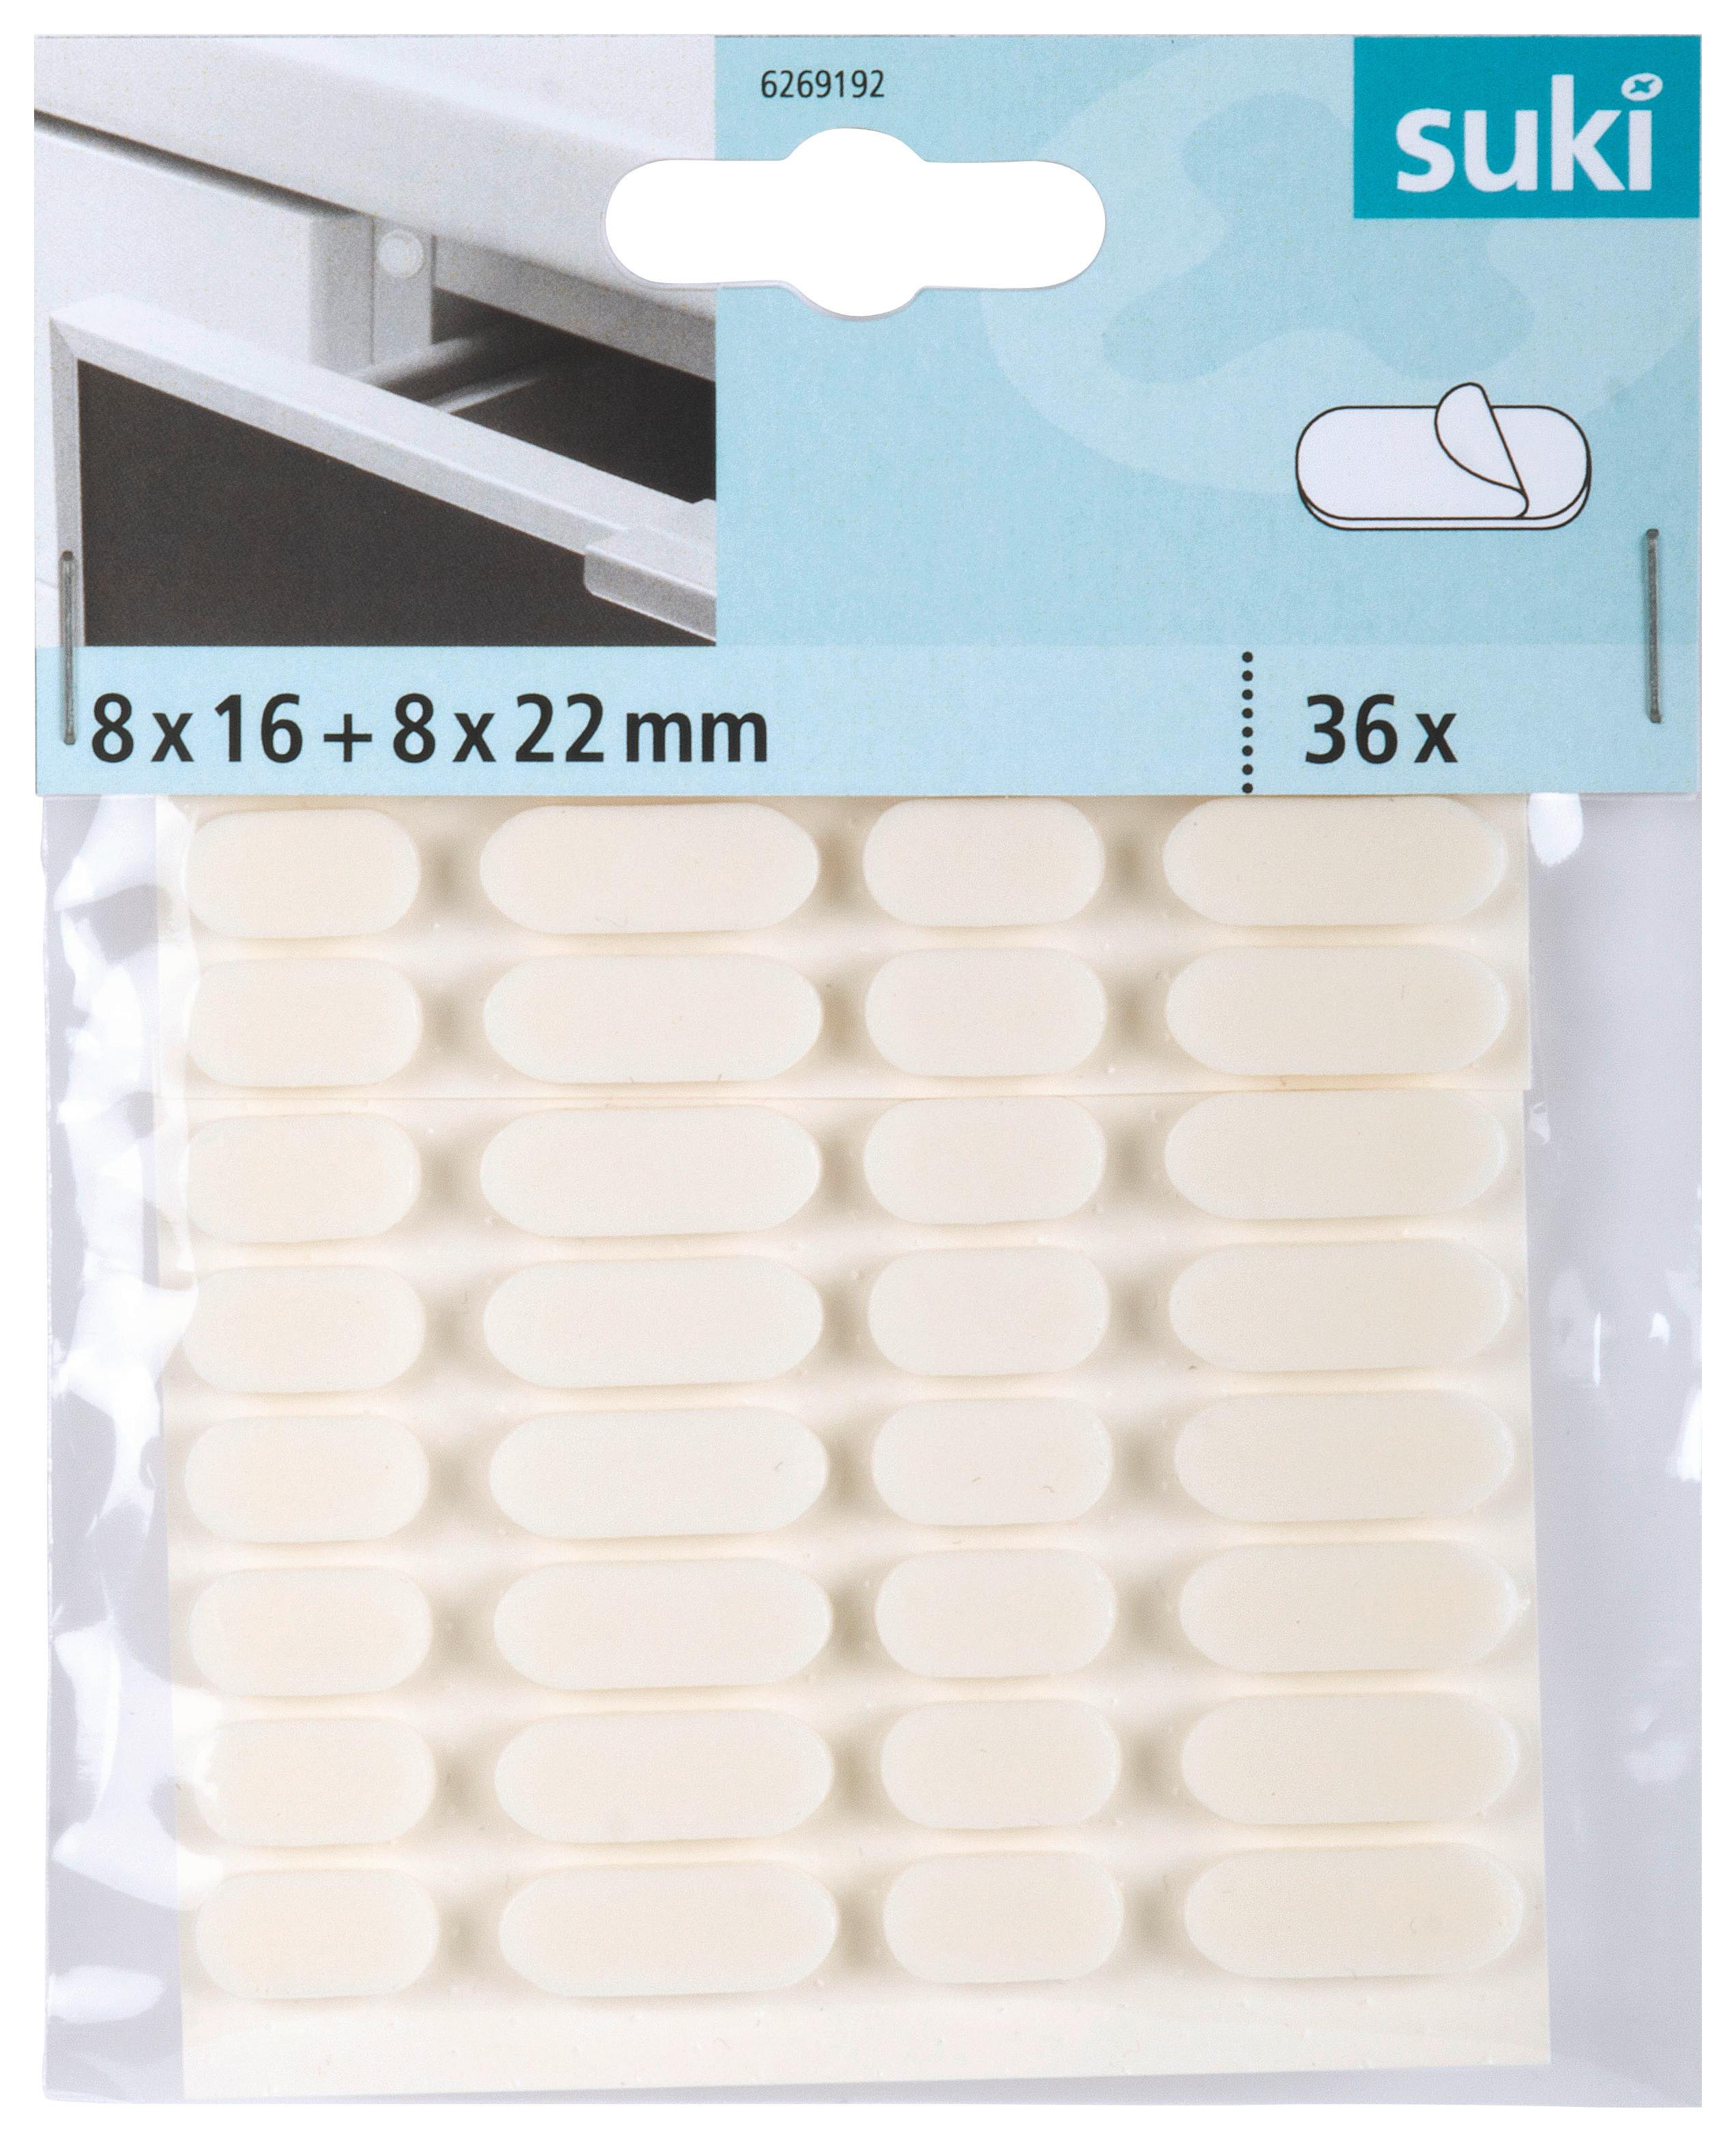 Schutzpuffer Weiß 36 Stk. L: 16-22 mm, Selbstklebend - Weiß, Kunststoff (1,6 + 2,2/0,8/0,4cm) - Suki